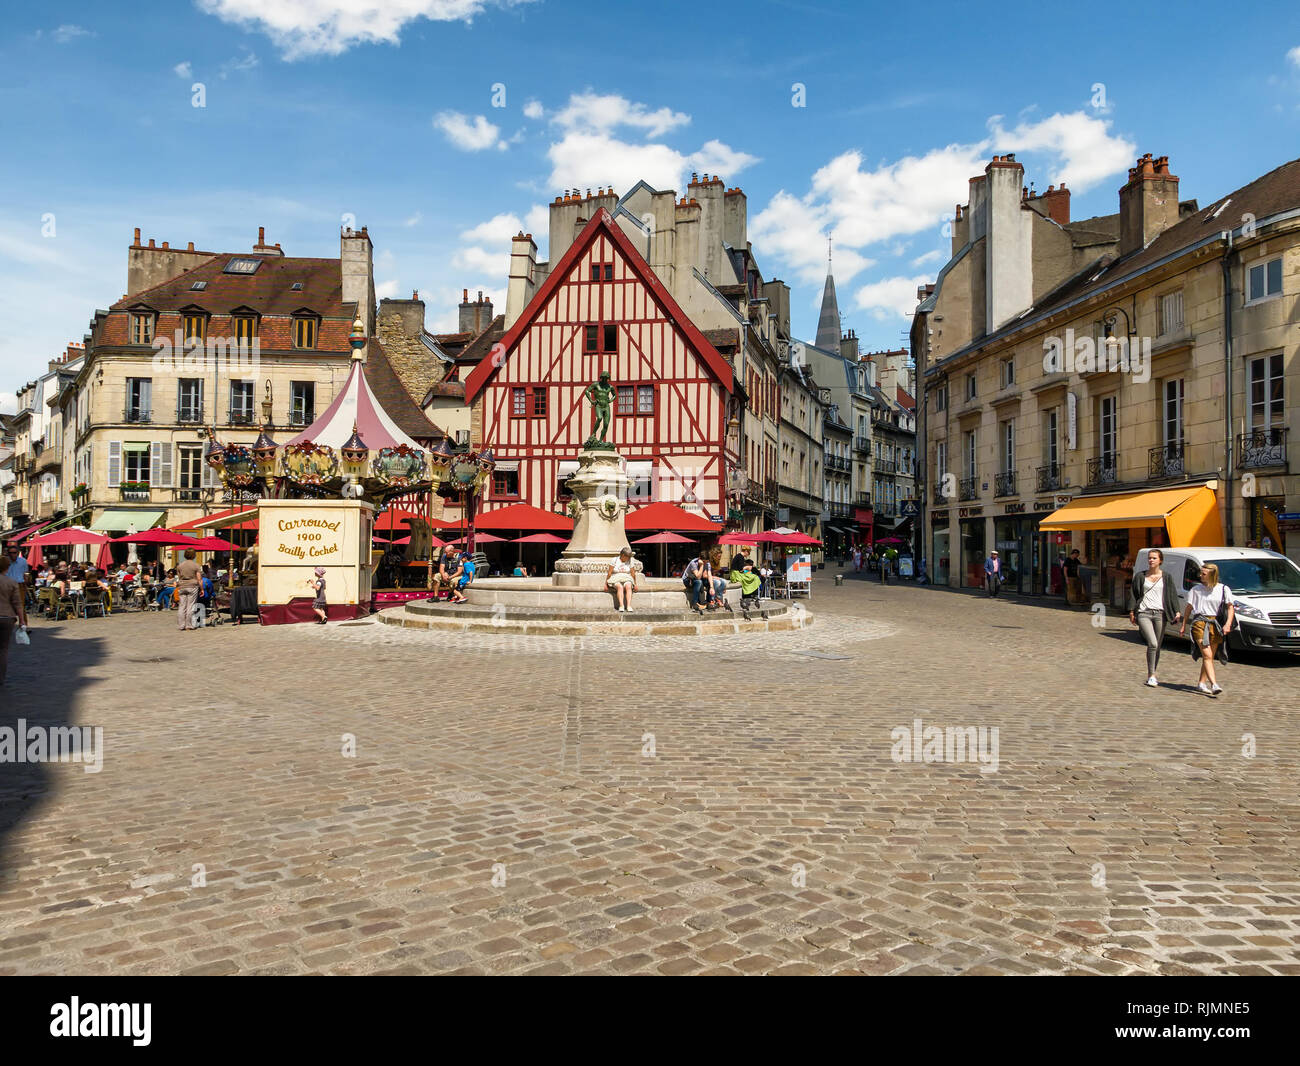 Der Ort Francois unhöflich, Dijon, Burgund, Frankreich, die die Brunnen und die hübsche Cafe. Auch eine französische Merry go round oder Karussell auf dem Platz. Stockfoto